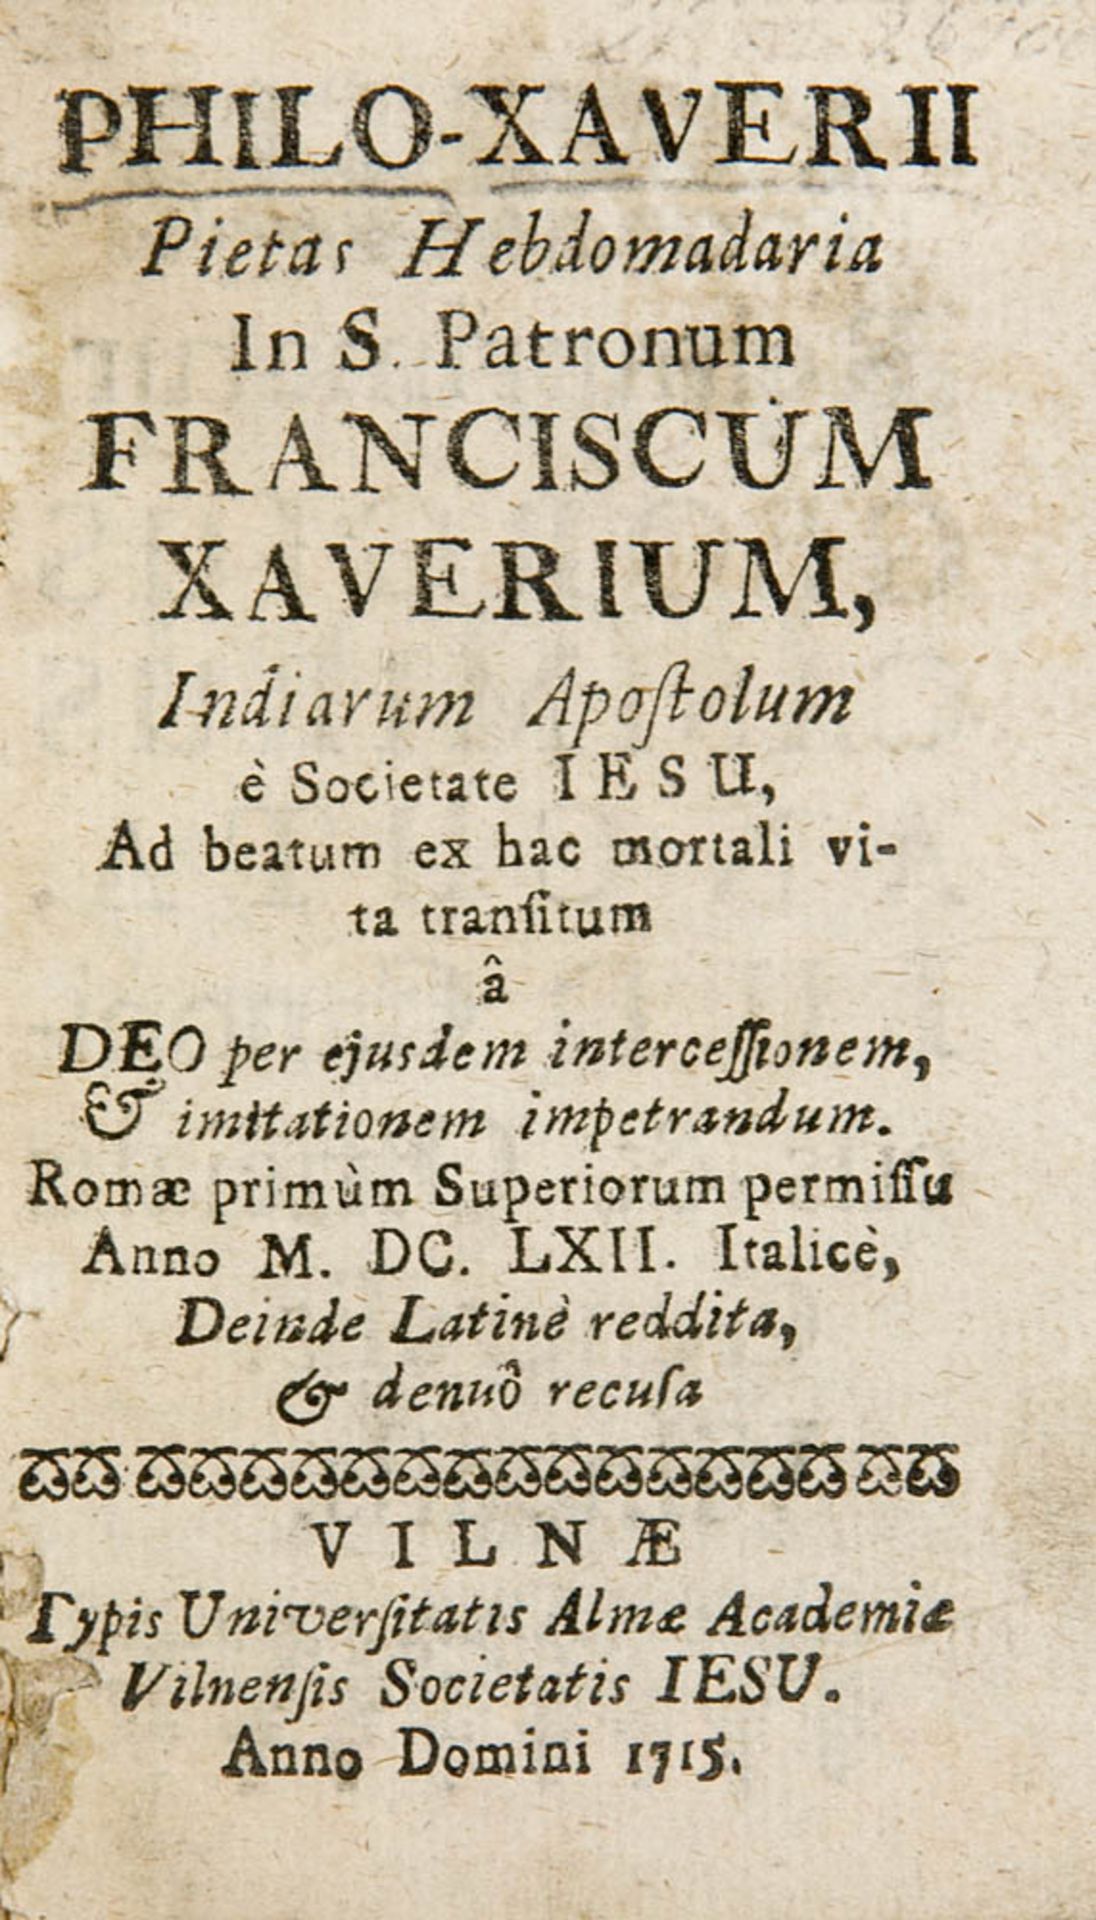 Franz Xaver. Philo-Xaverii Pietas Hebdomadaria in S. Patronum Franciscum Xaverium, Indiarum